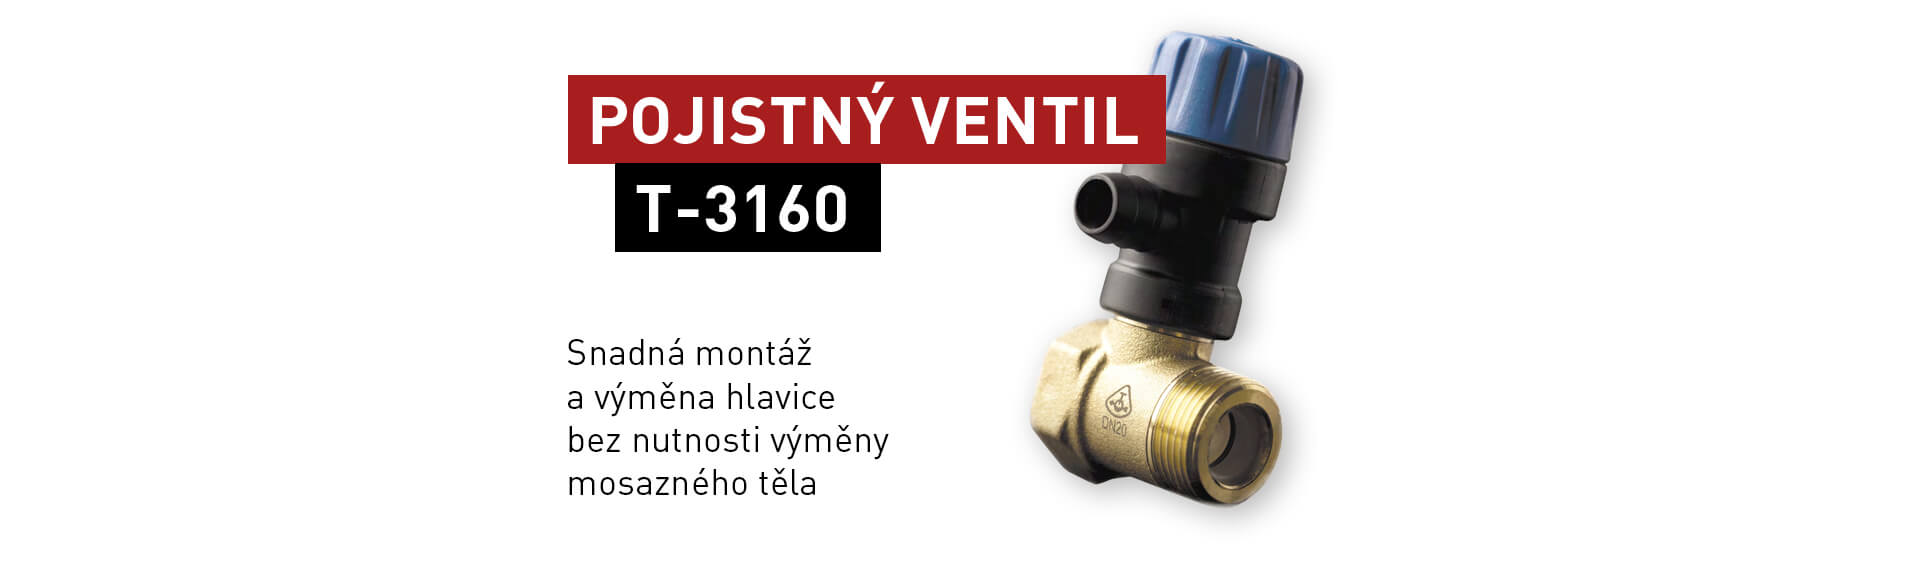 Pojistný ventil T-3160